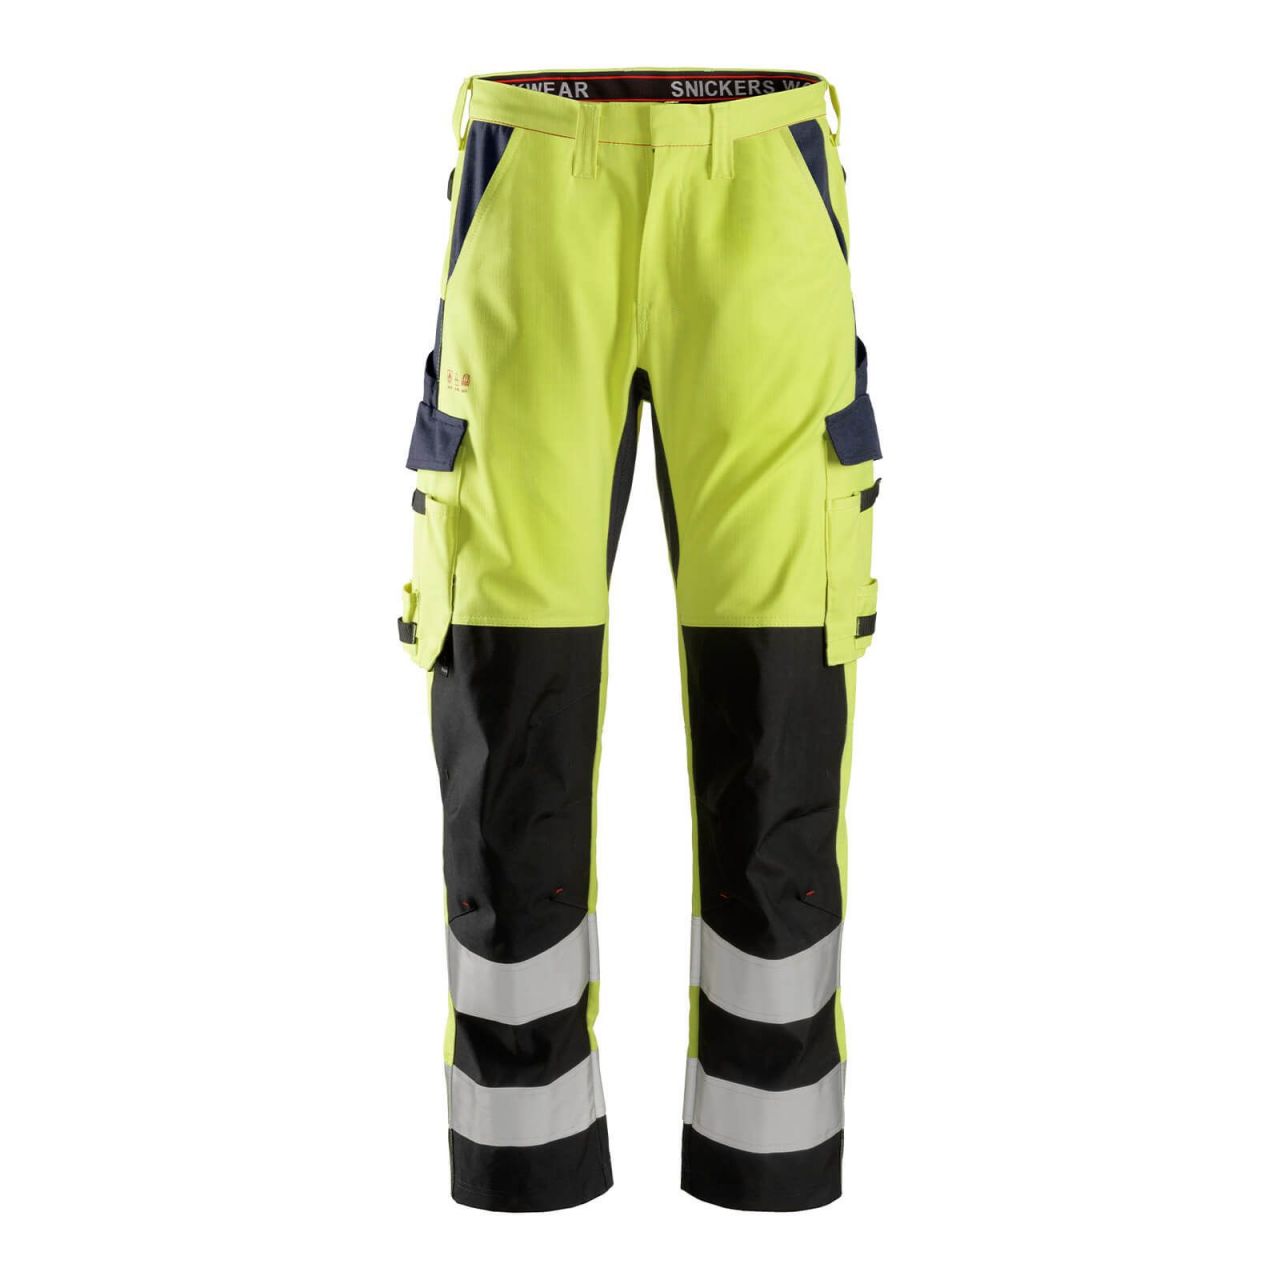 6364 Pantalones largos de trabajo de alta visibilidad clase 2 con espinilla reforzada ProtecWork amarillo-azul marino talla 116